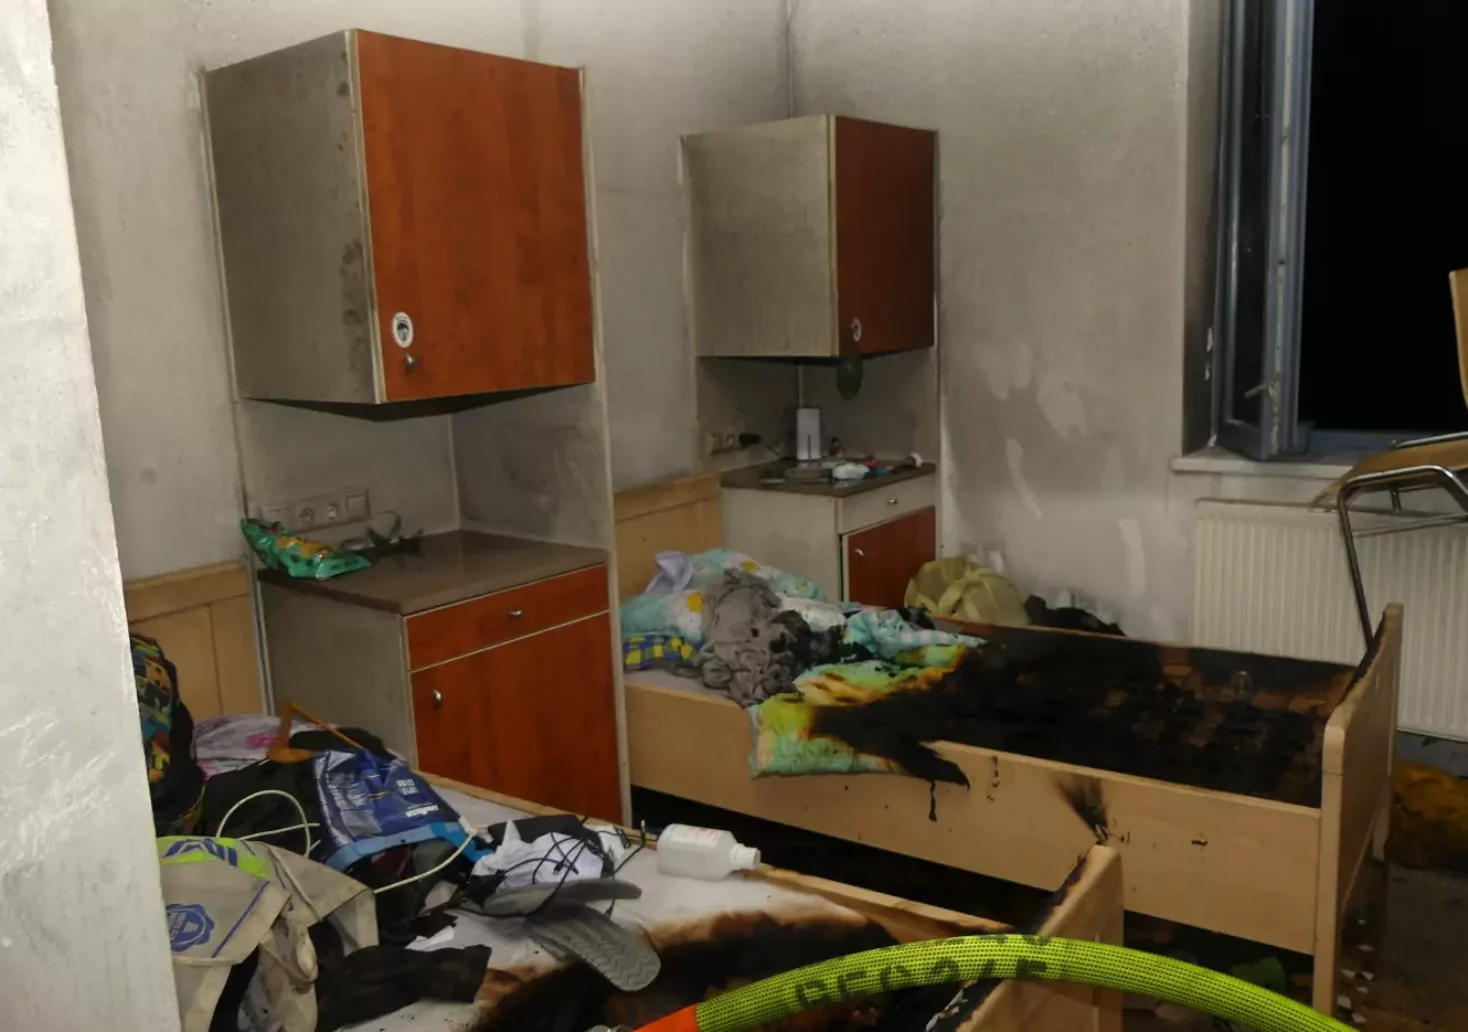 Bild auf 5min.at zeigt eine verkohlte Wohnung nach einem Brand in Graz.